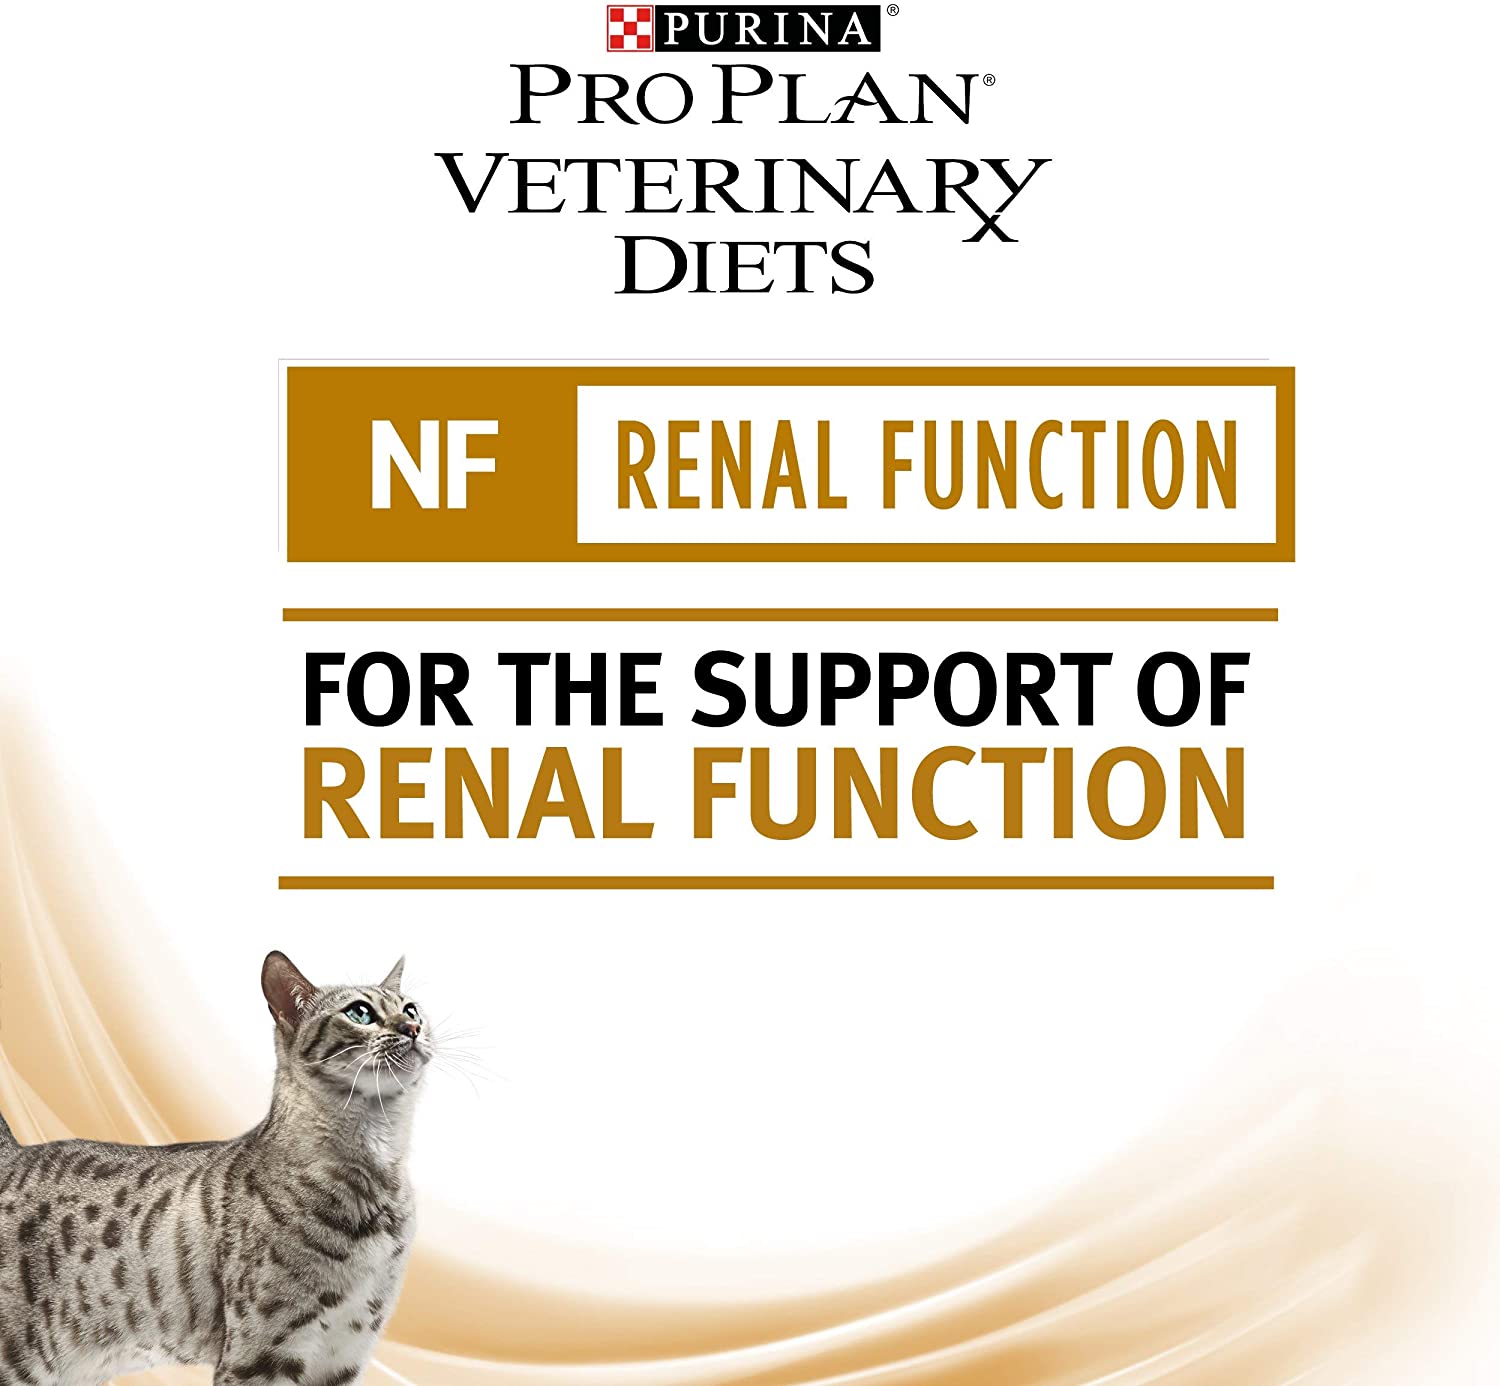  Pro Plan Veterinary Diets Feline NF Renal Function Cat Food 195g - Caja de 24 